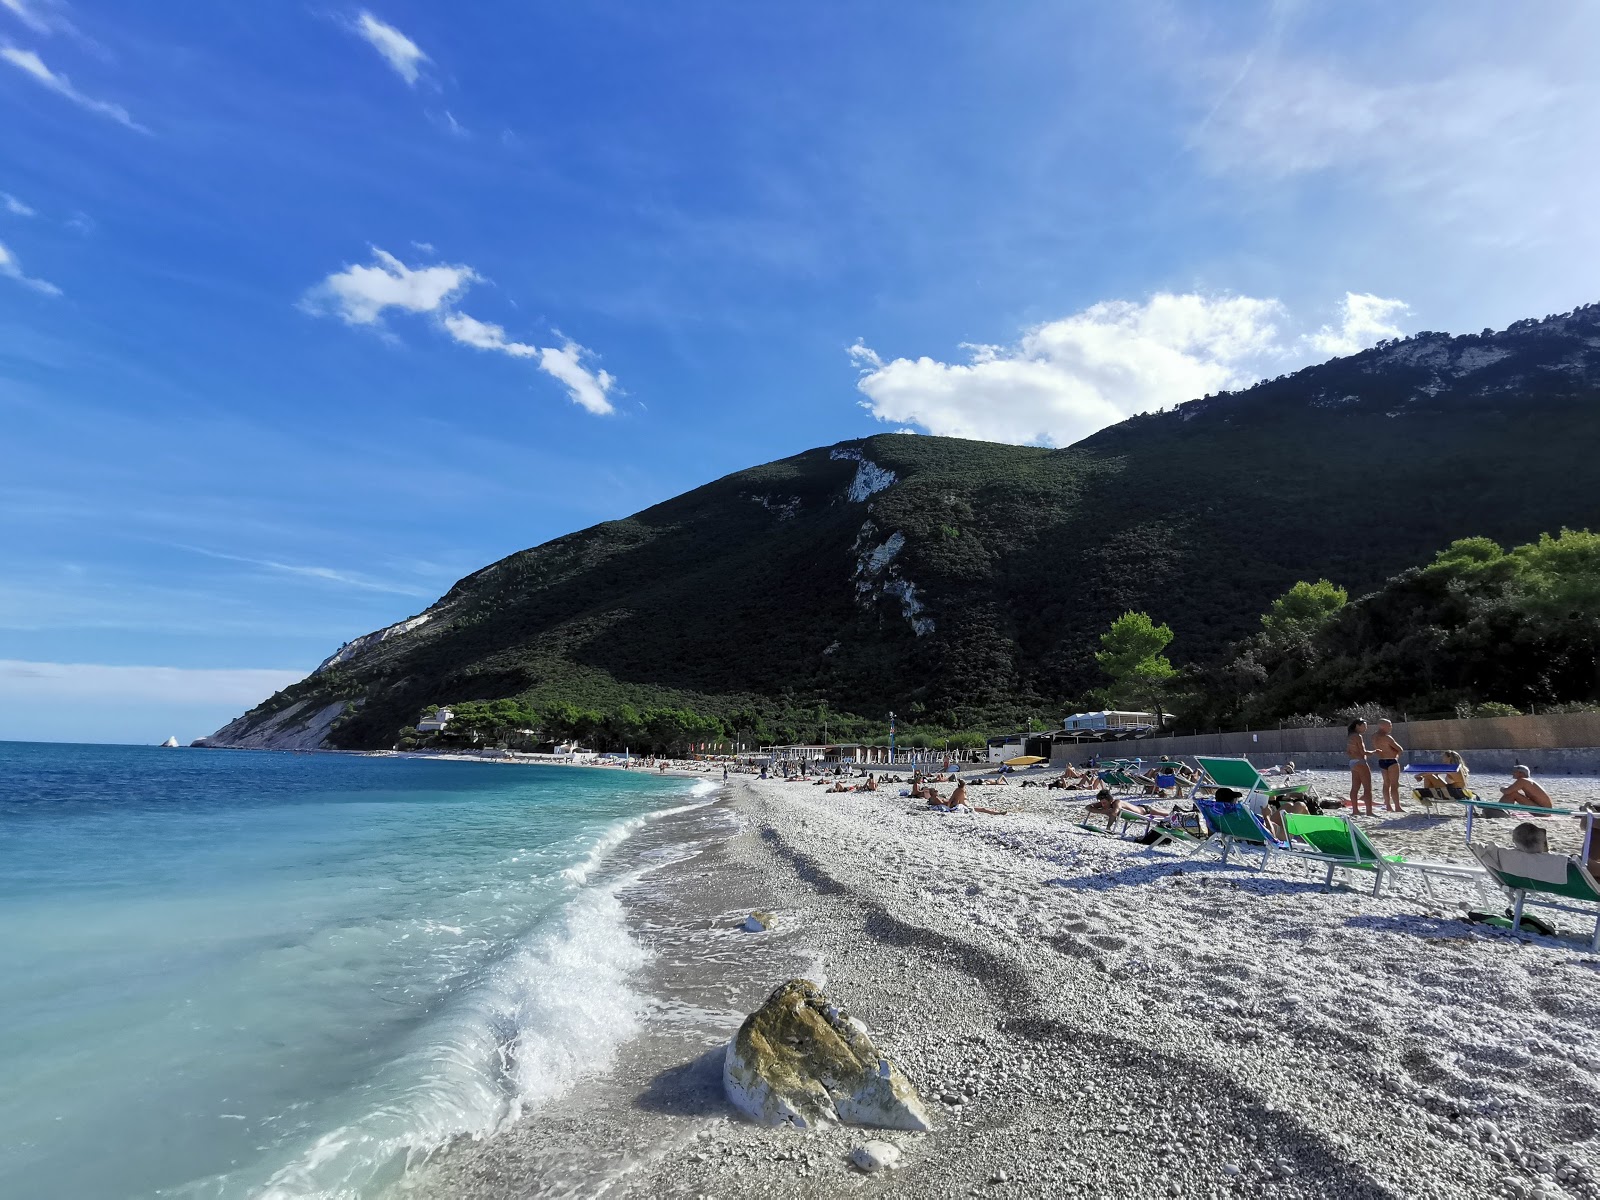 Spiaggia Bonetti'in fotoğrafı beyaz kum ve çakıl yüzey ile